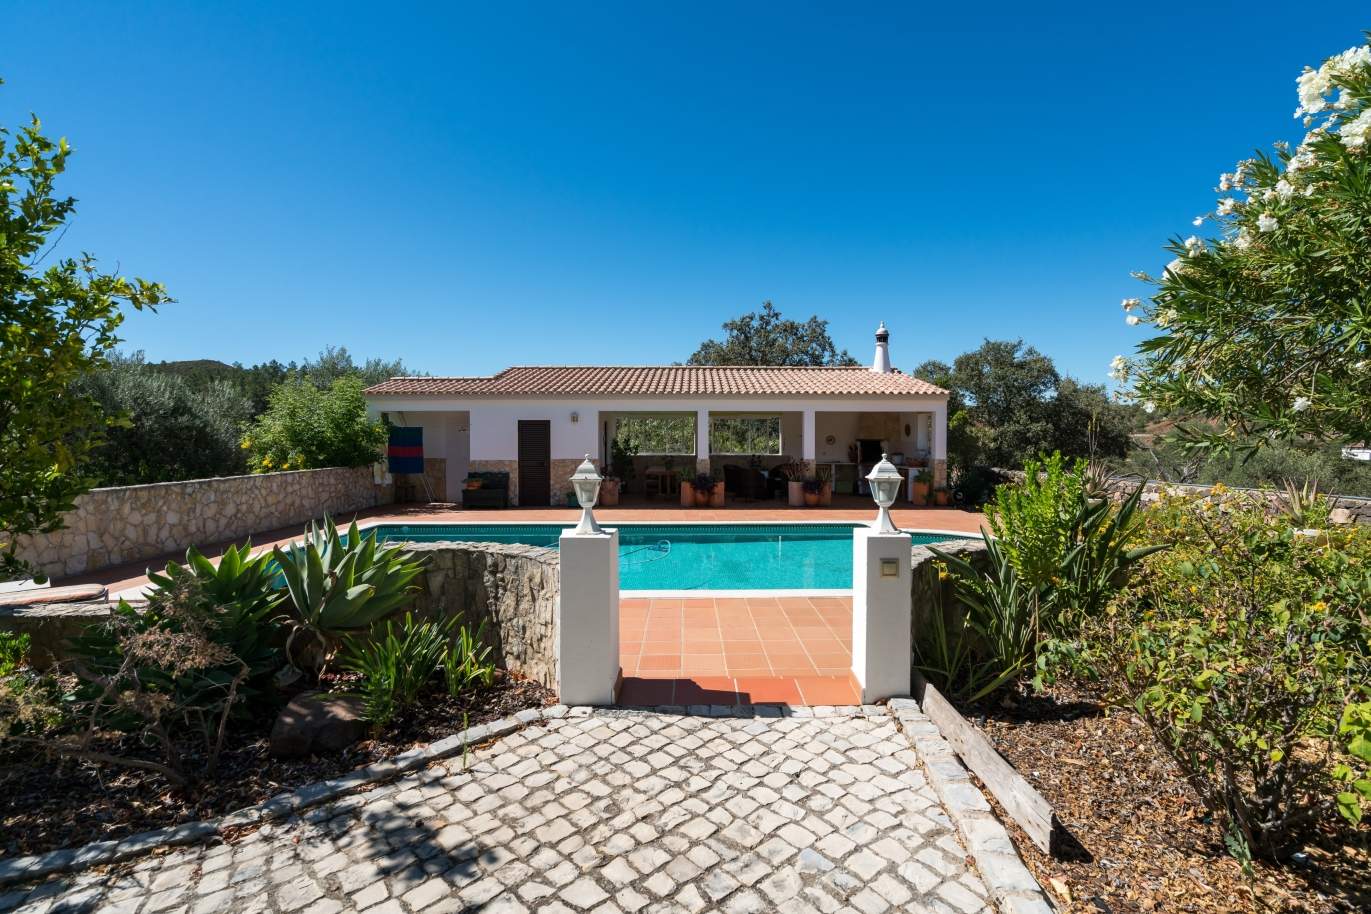 Moradia T3+1, com piscina de agua salgada, Querença, Loulé, Algarve_148464